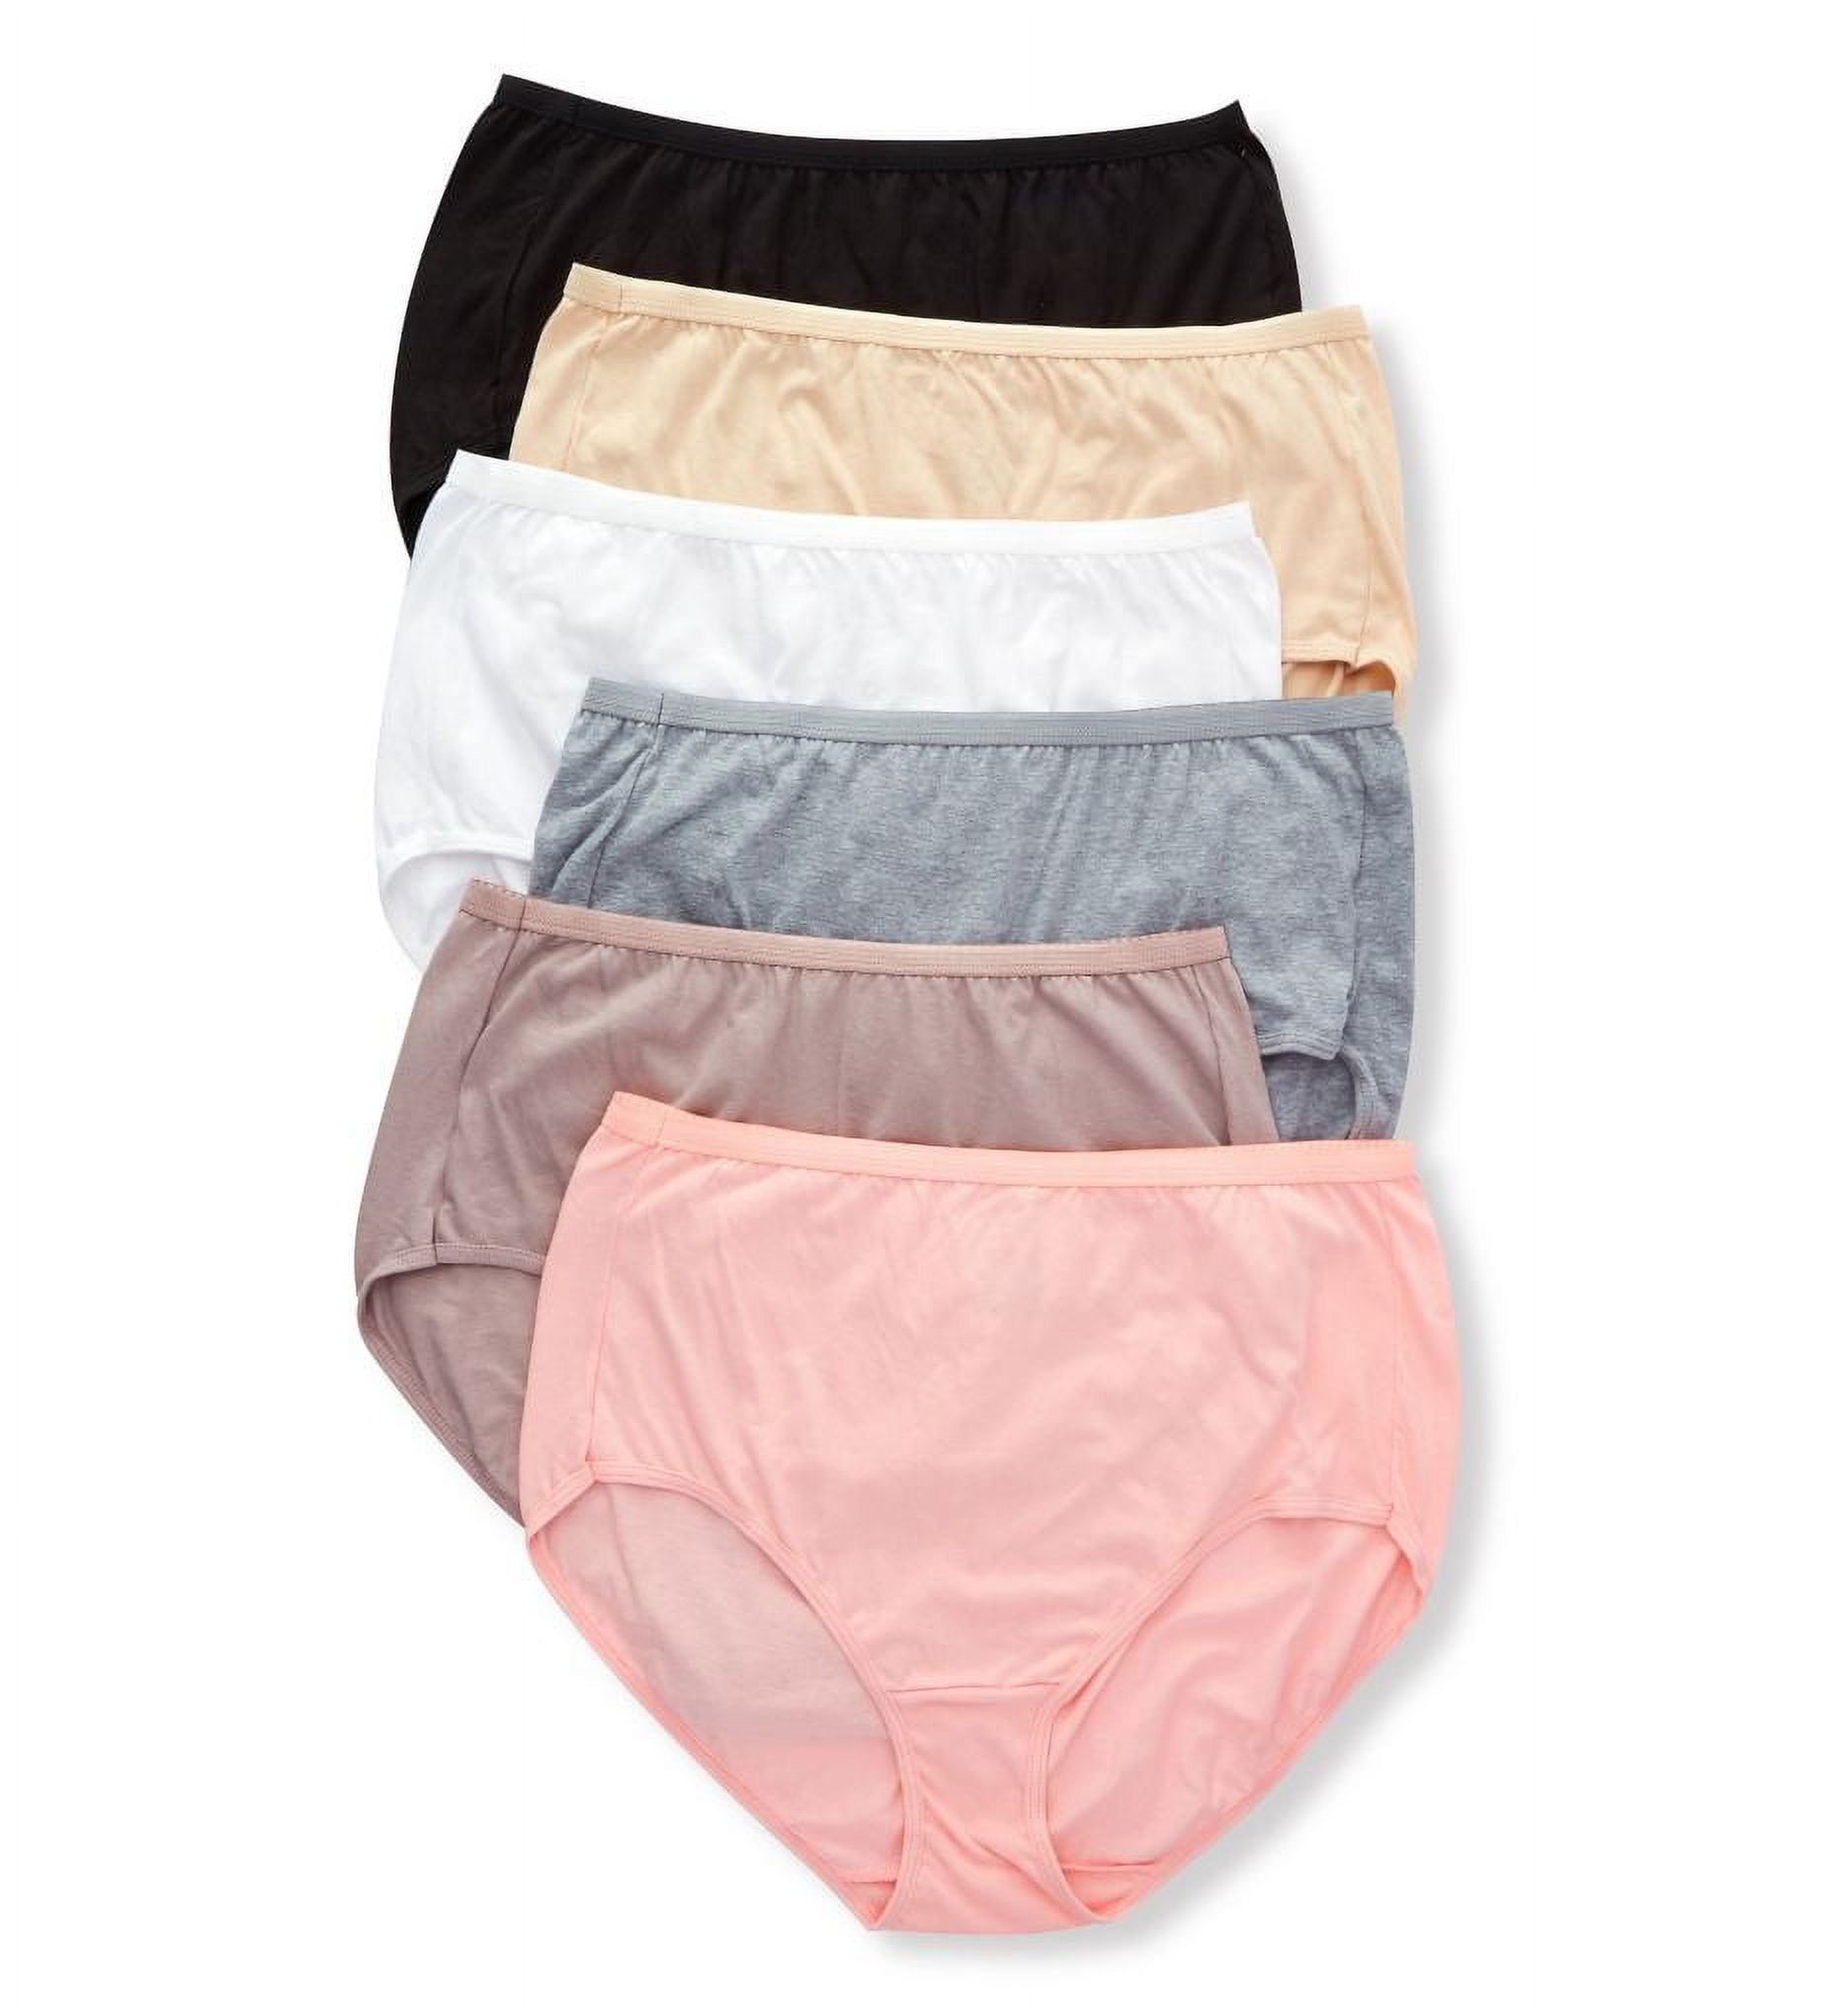 Just My Size Cotton High Waist Brief Underwear, 6-Pack - image 1 of 1